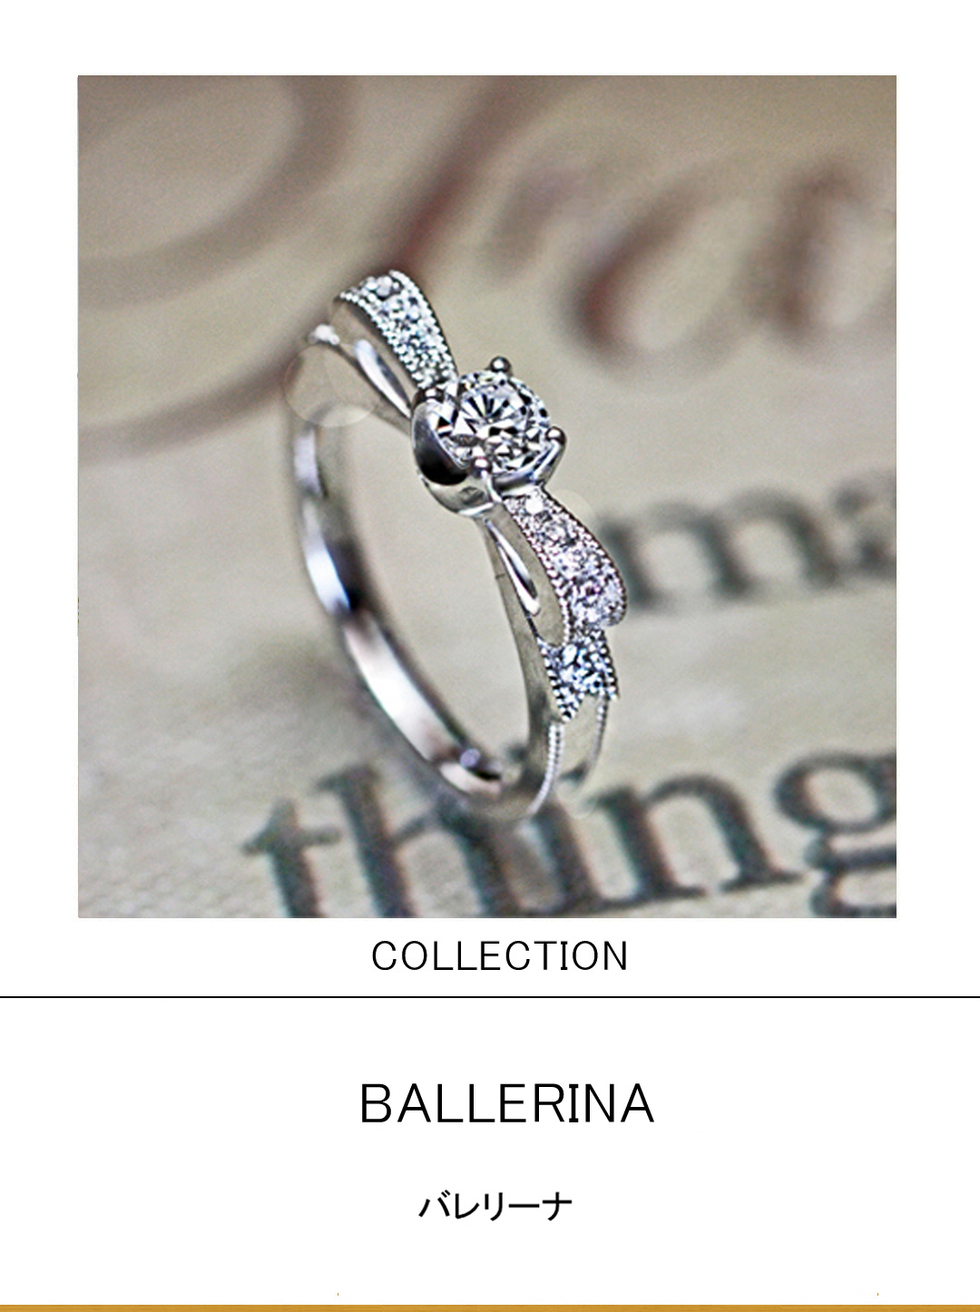 バレリーナのトゥーシューズリボンをデザインしたプラチナ婚約指輪 千葉 柏の結婚指輪 婚約指輪 ヨーアンドマーレ